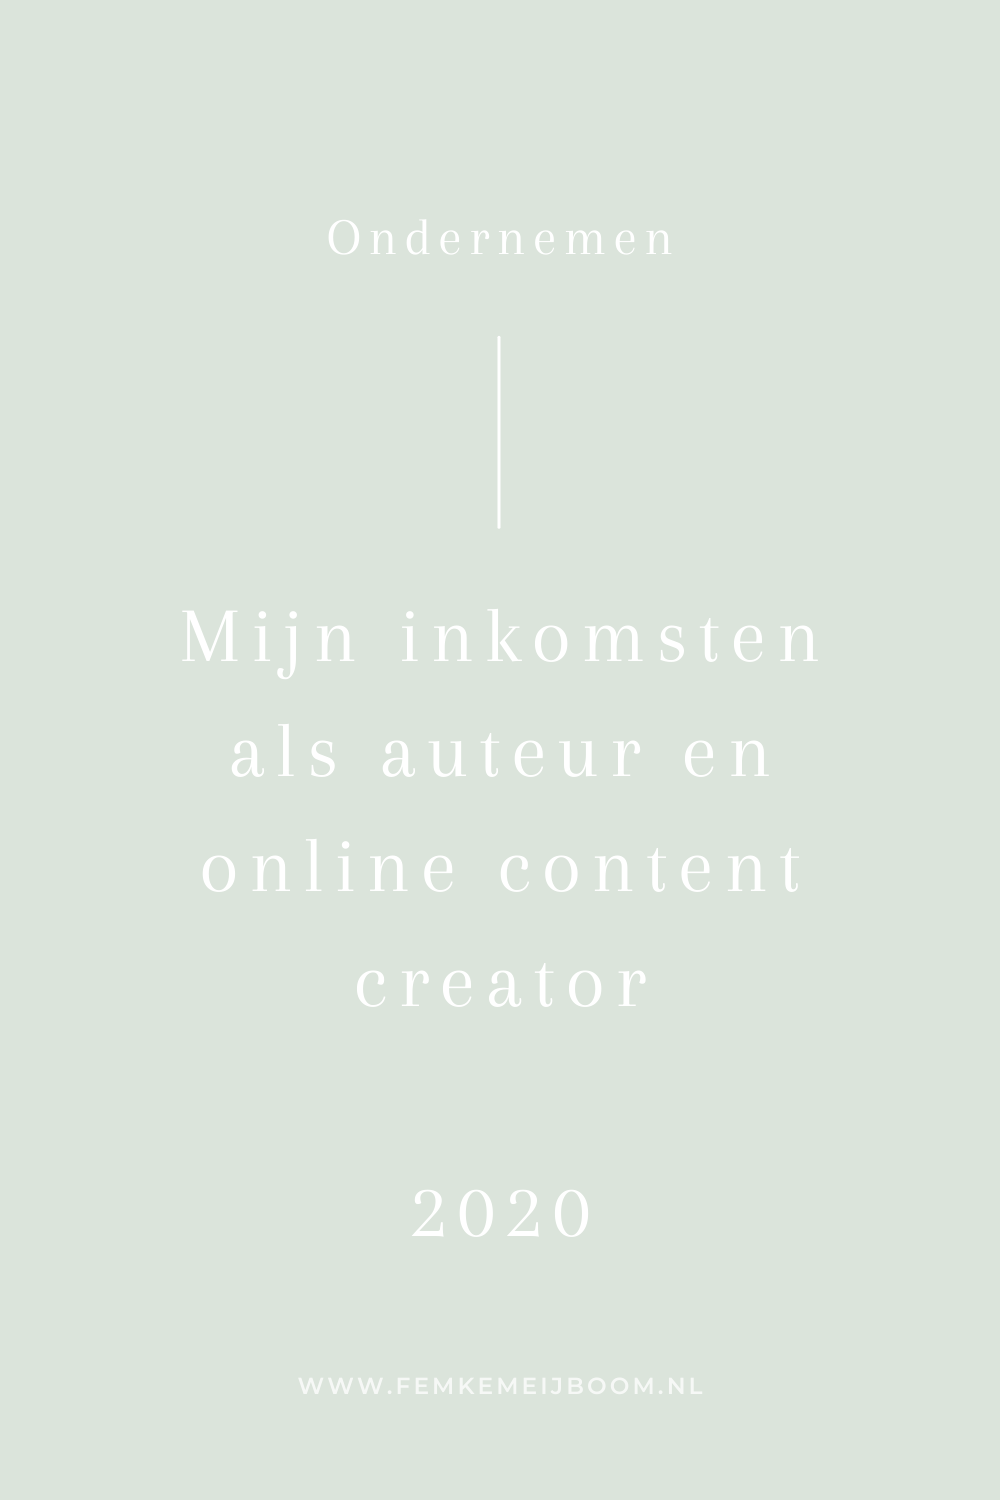 Mijn omzet als ondernemer, auteur en content creator (2020)